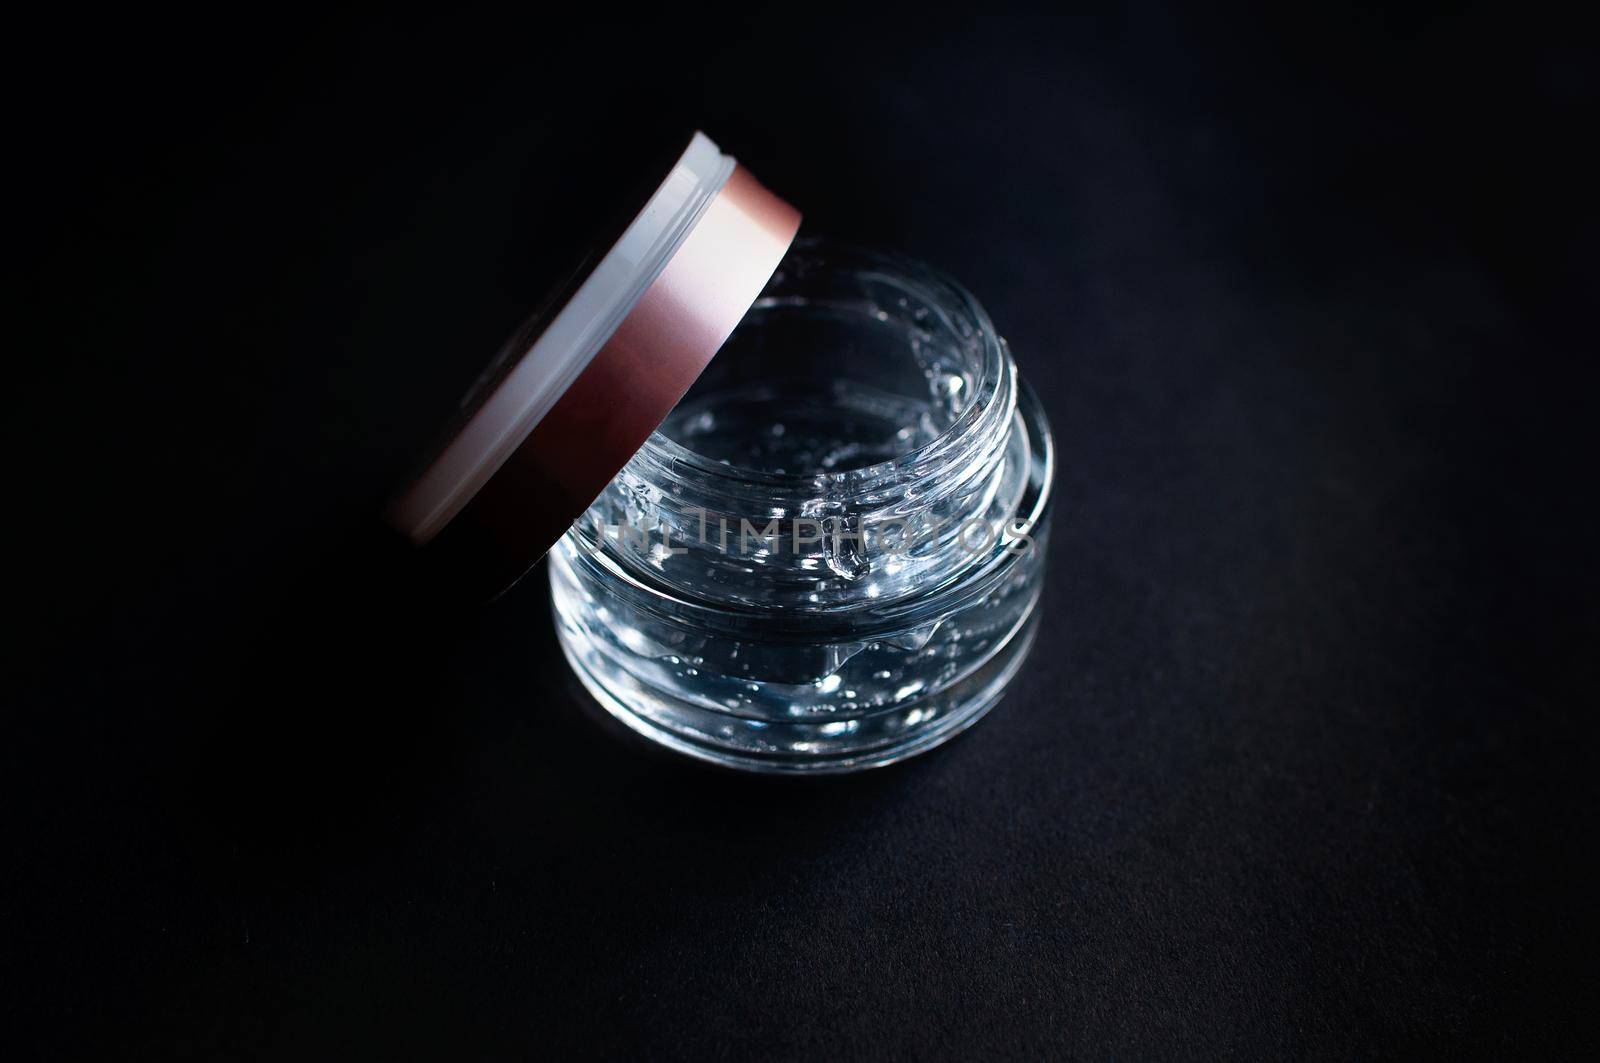 transparent jar with hyaluronic acid moisturizing gel on a black background